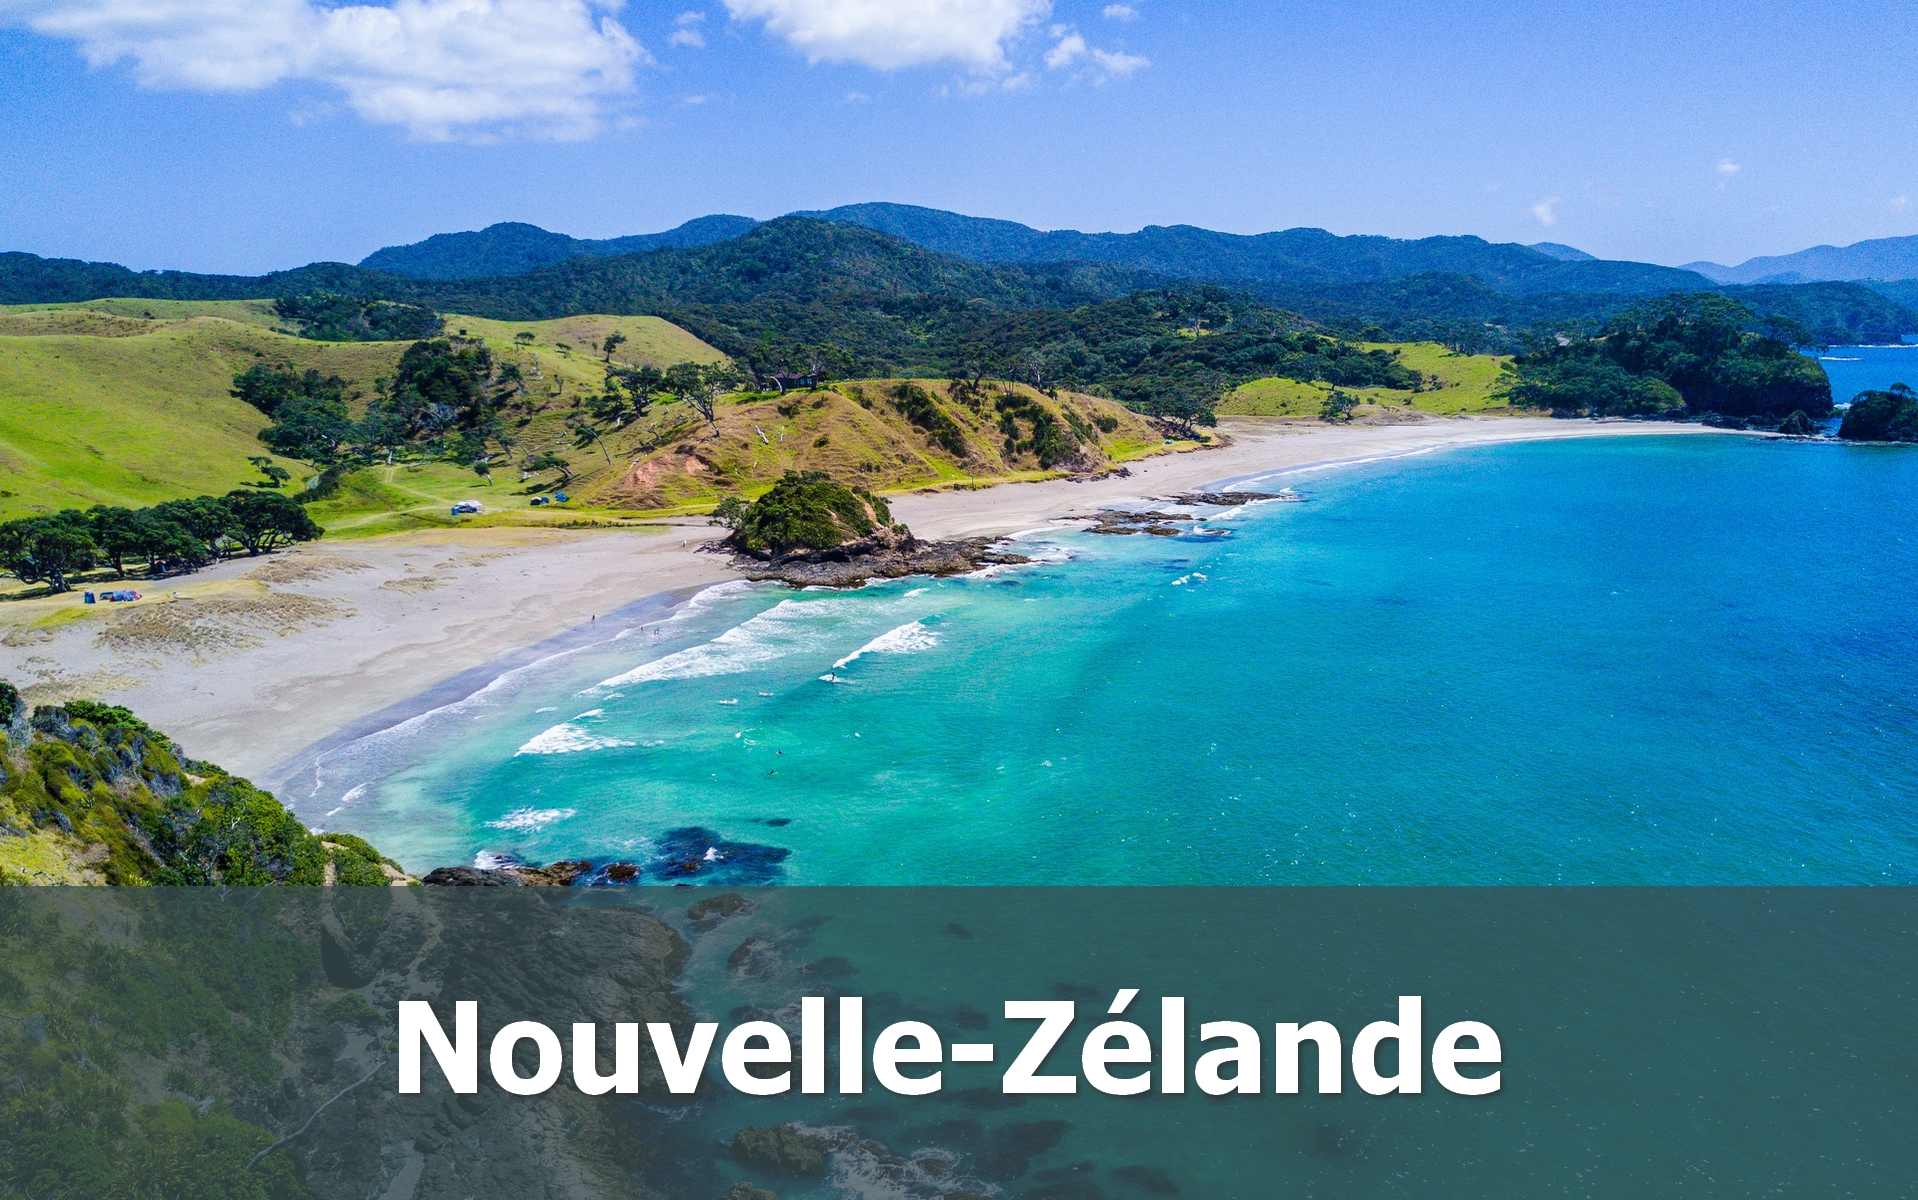 Voyage en Nouvelle-Zélande sur-mesure plage